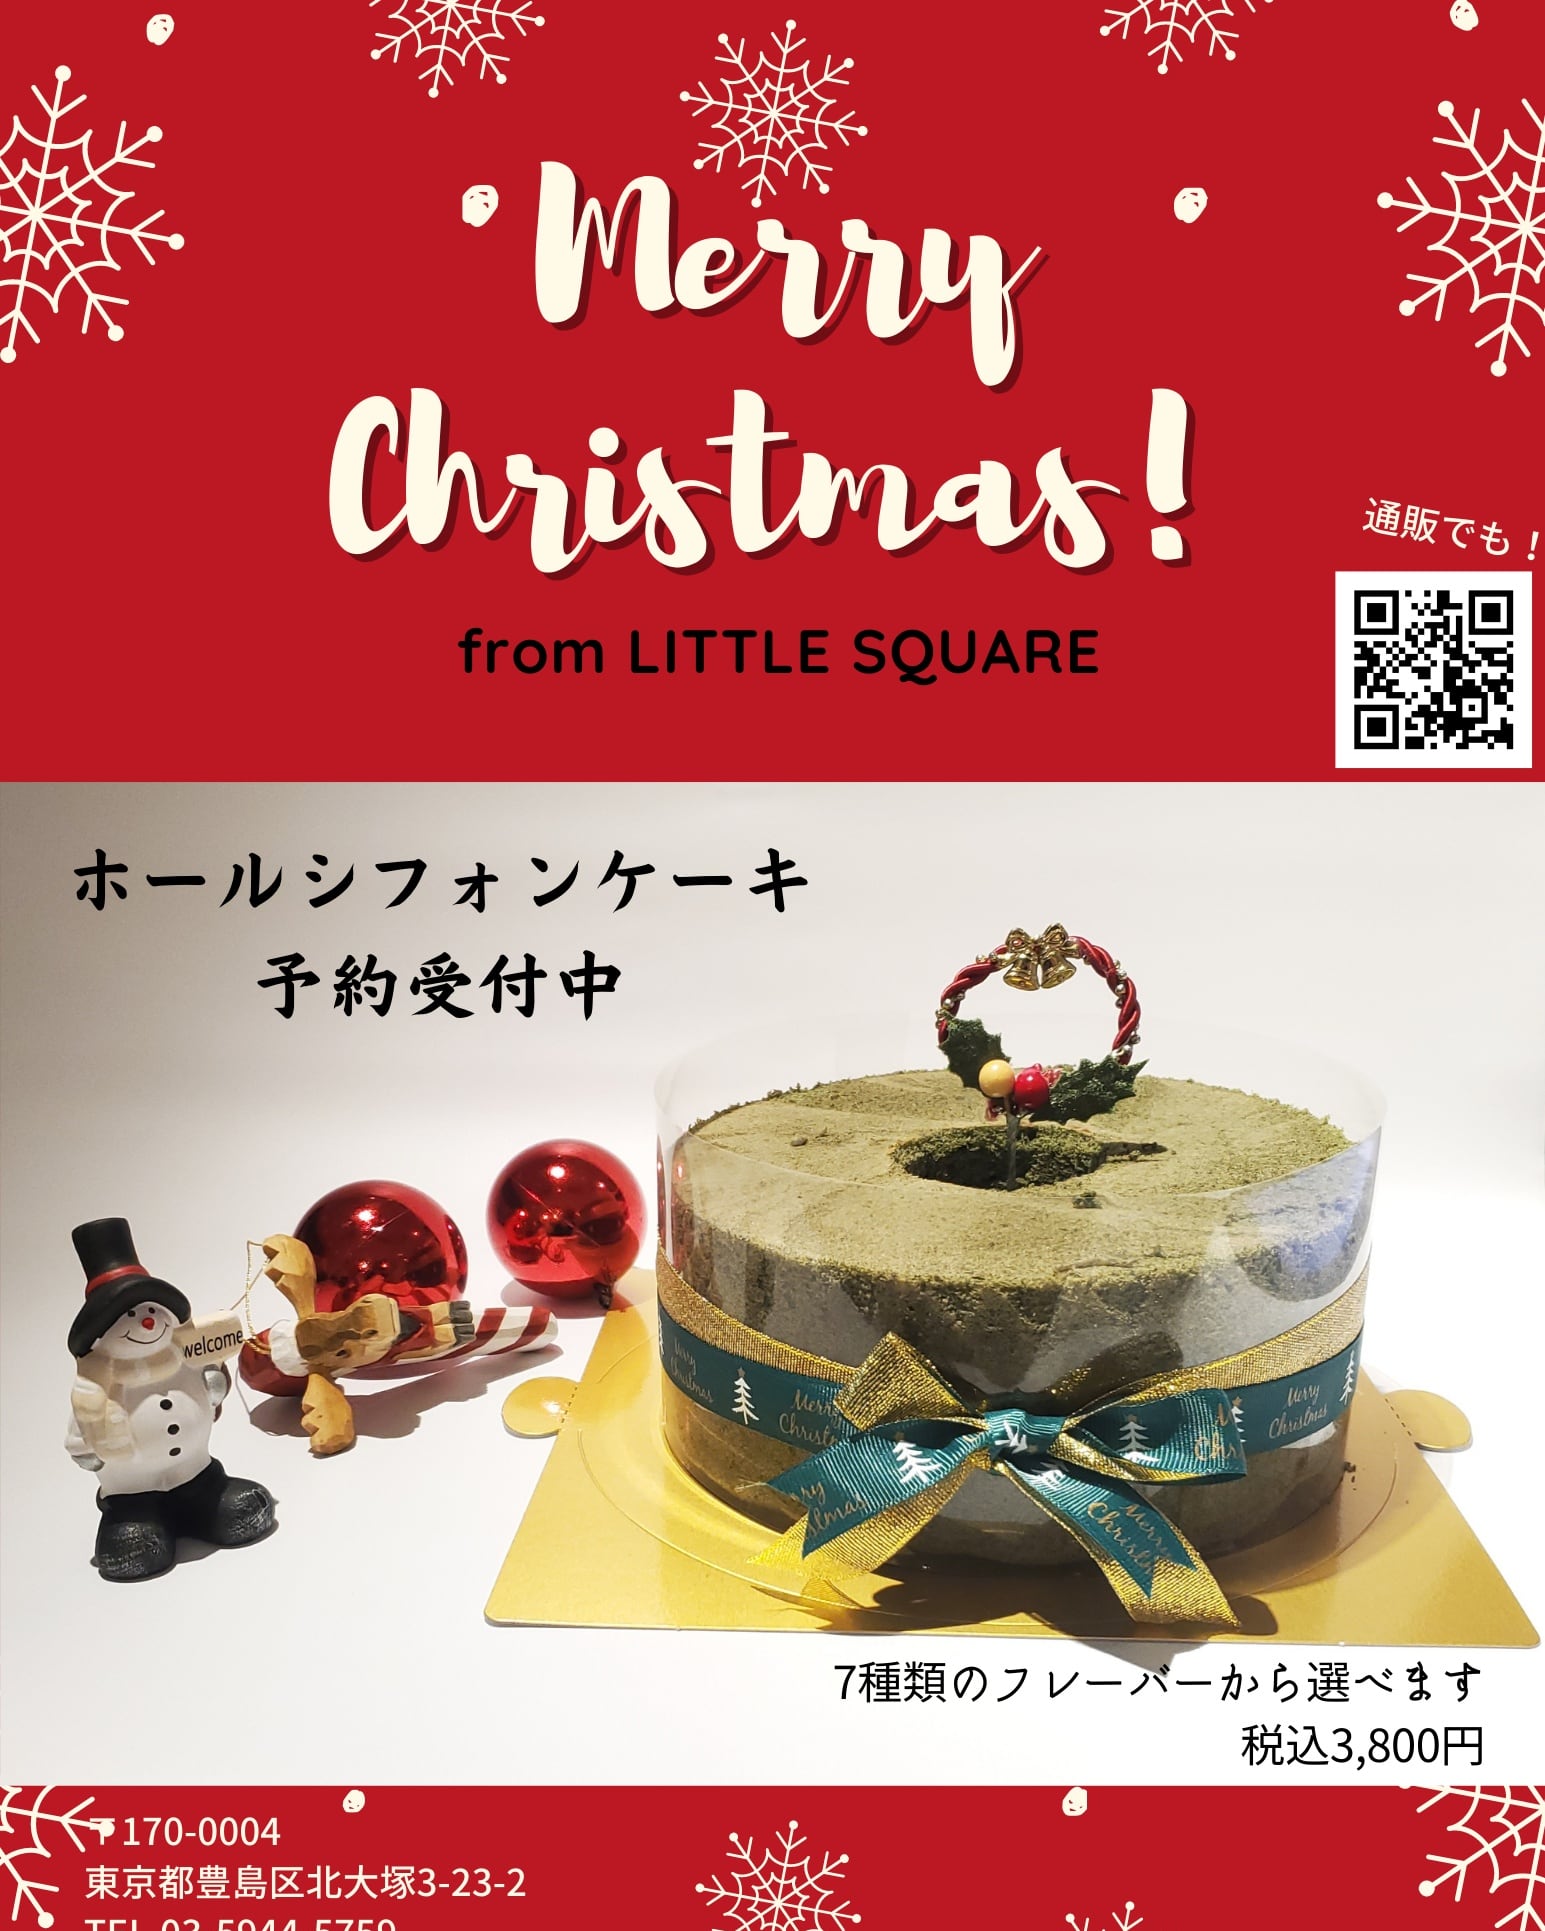 【クリスマス特価】ホールケーキ注文受付中